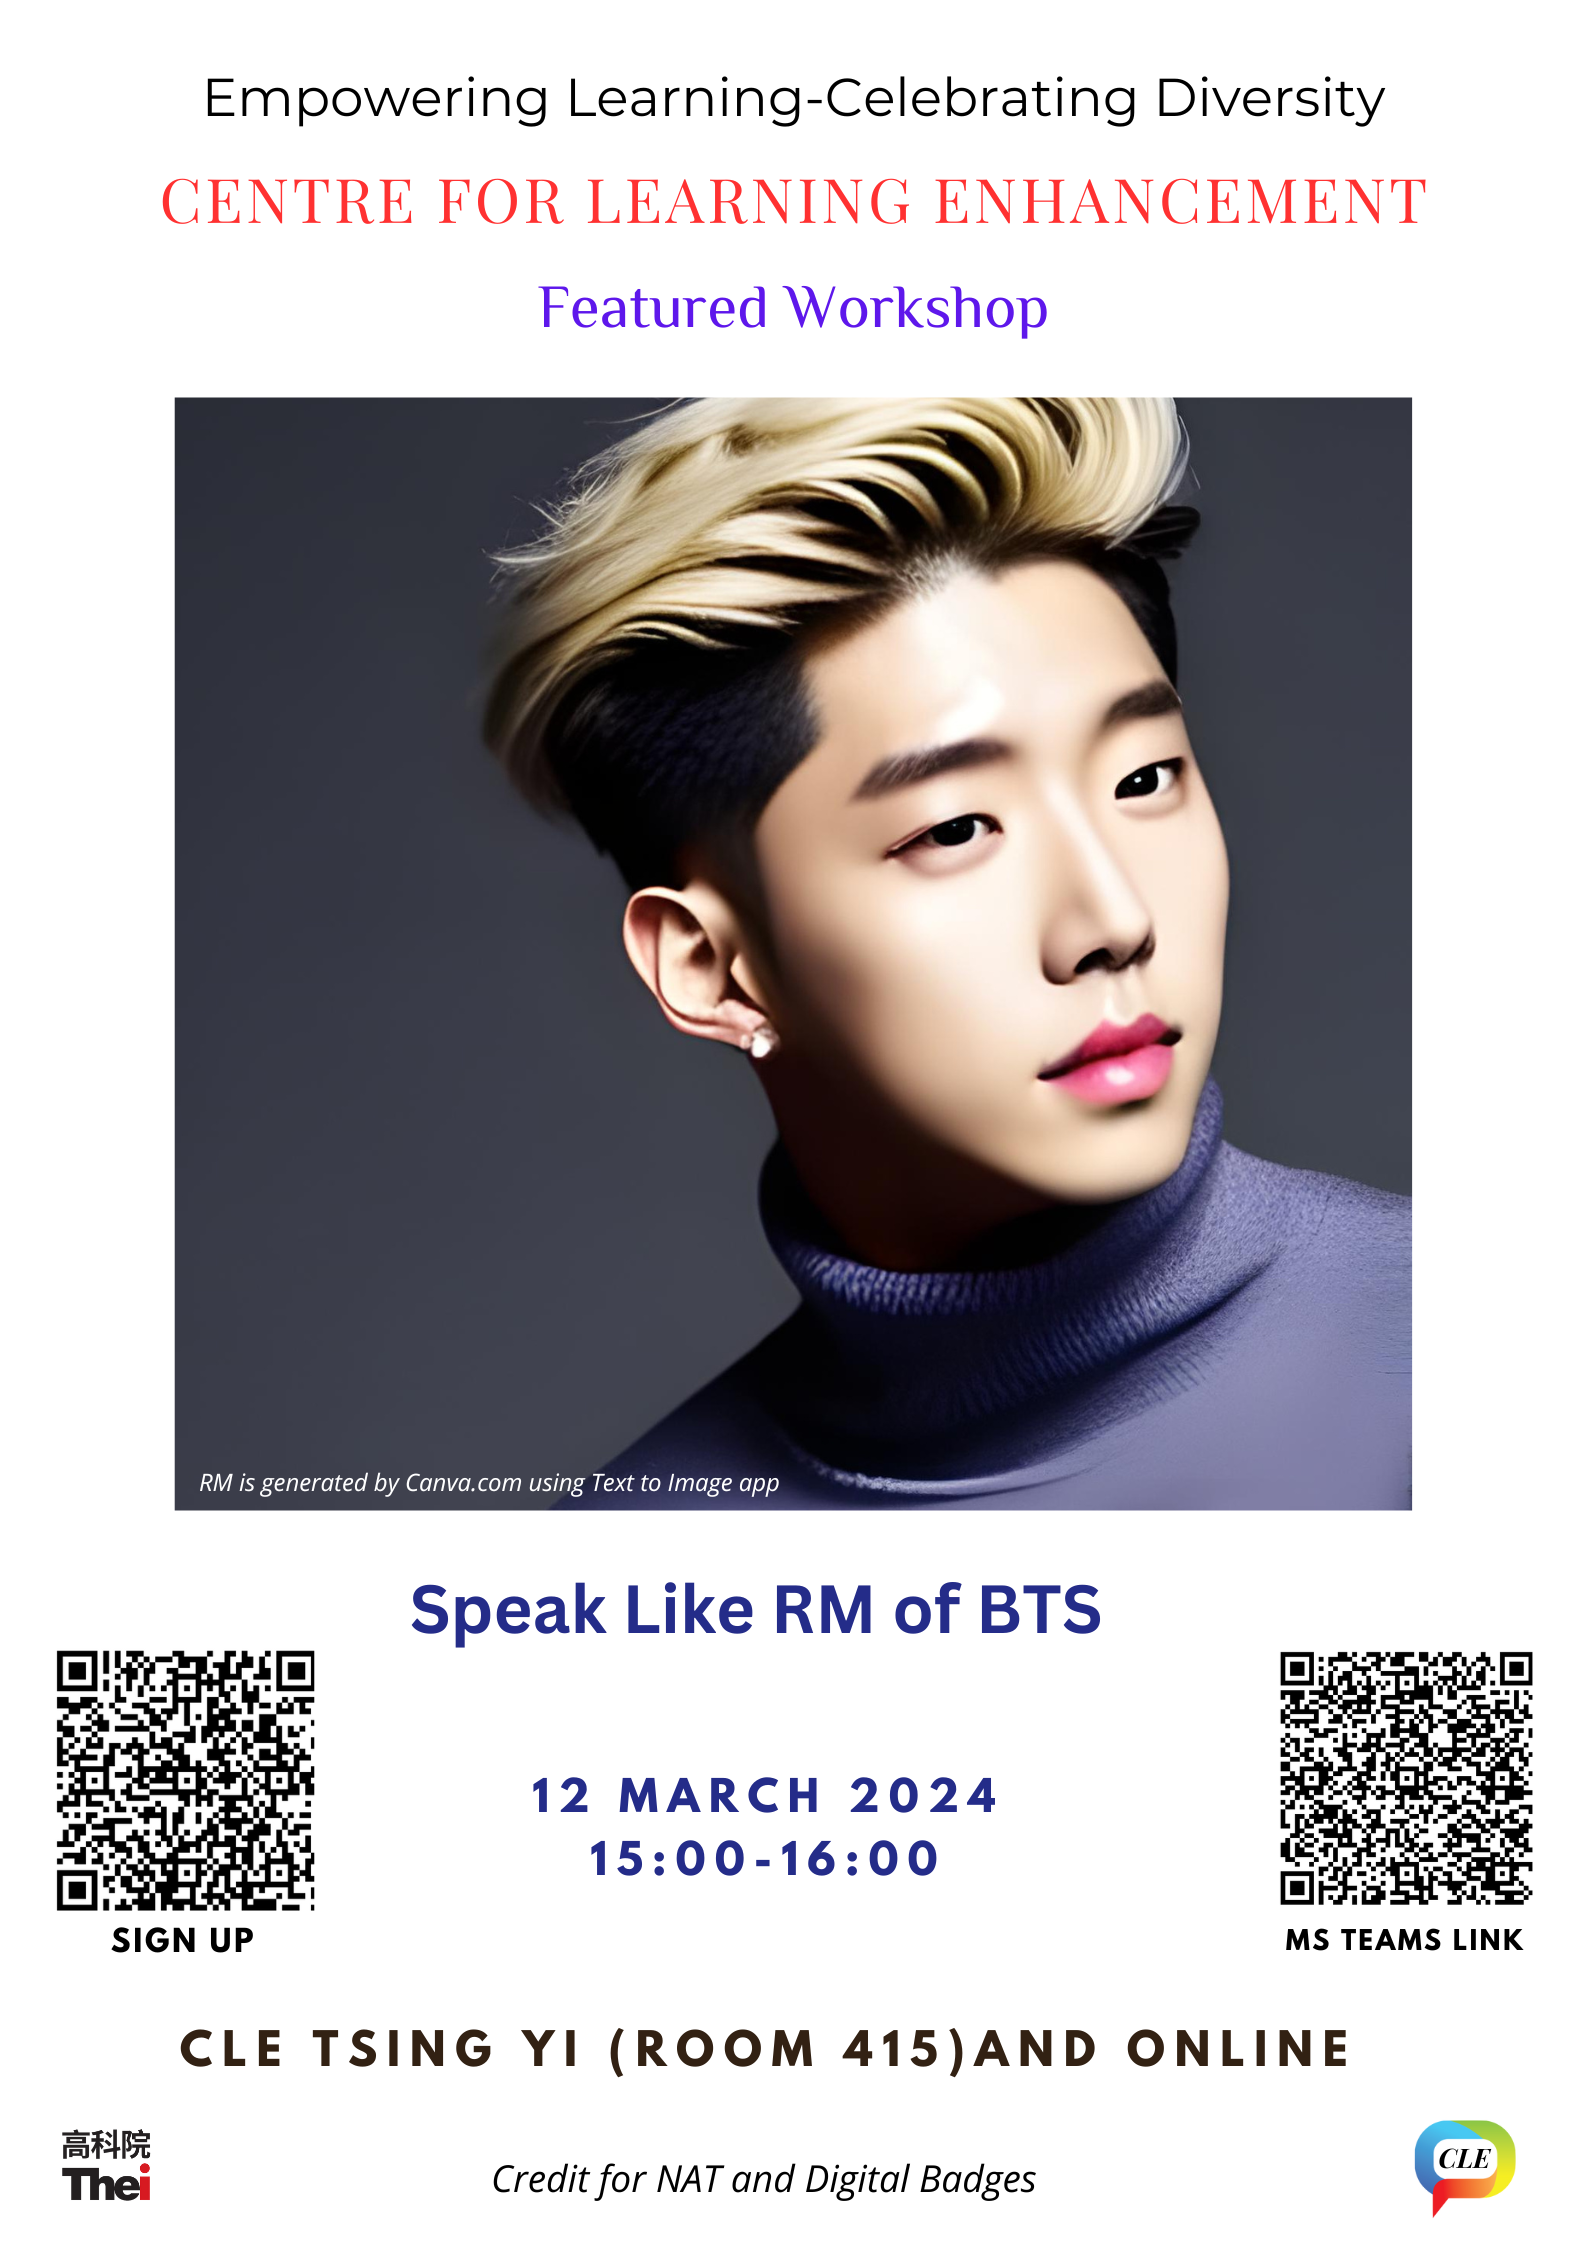 Speak Like RM